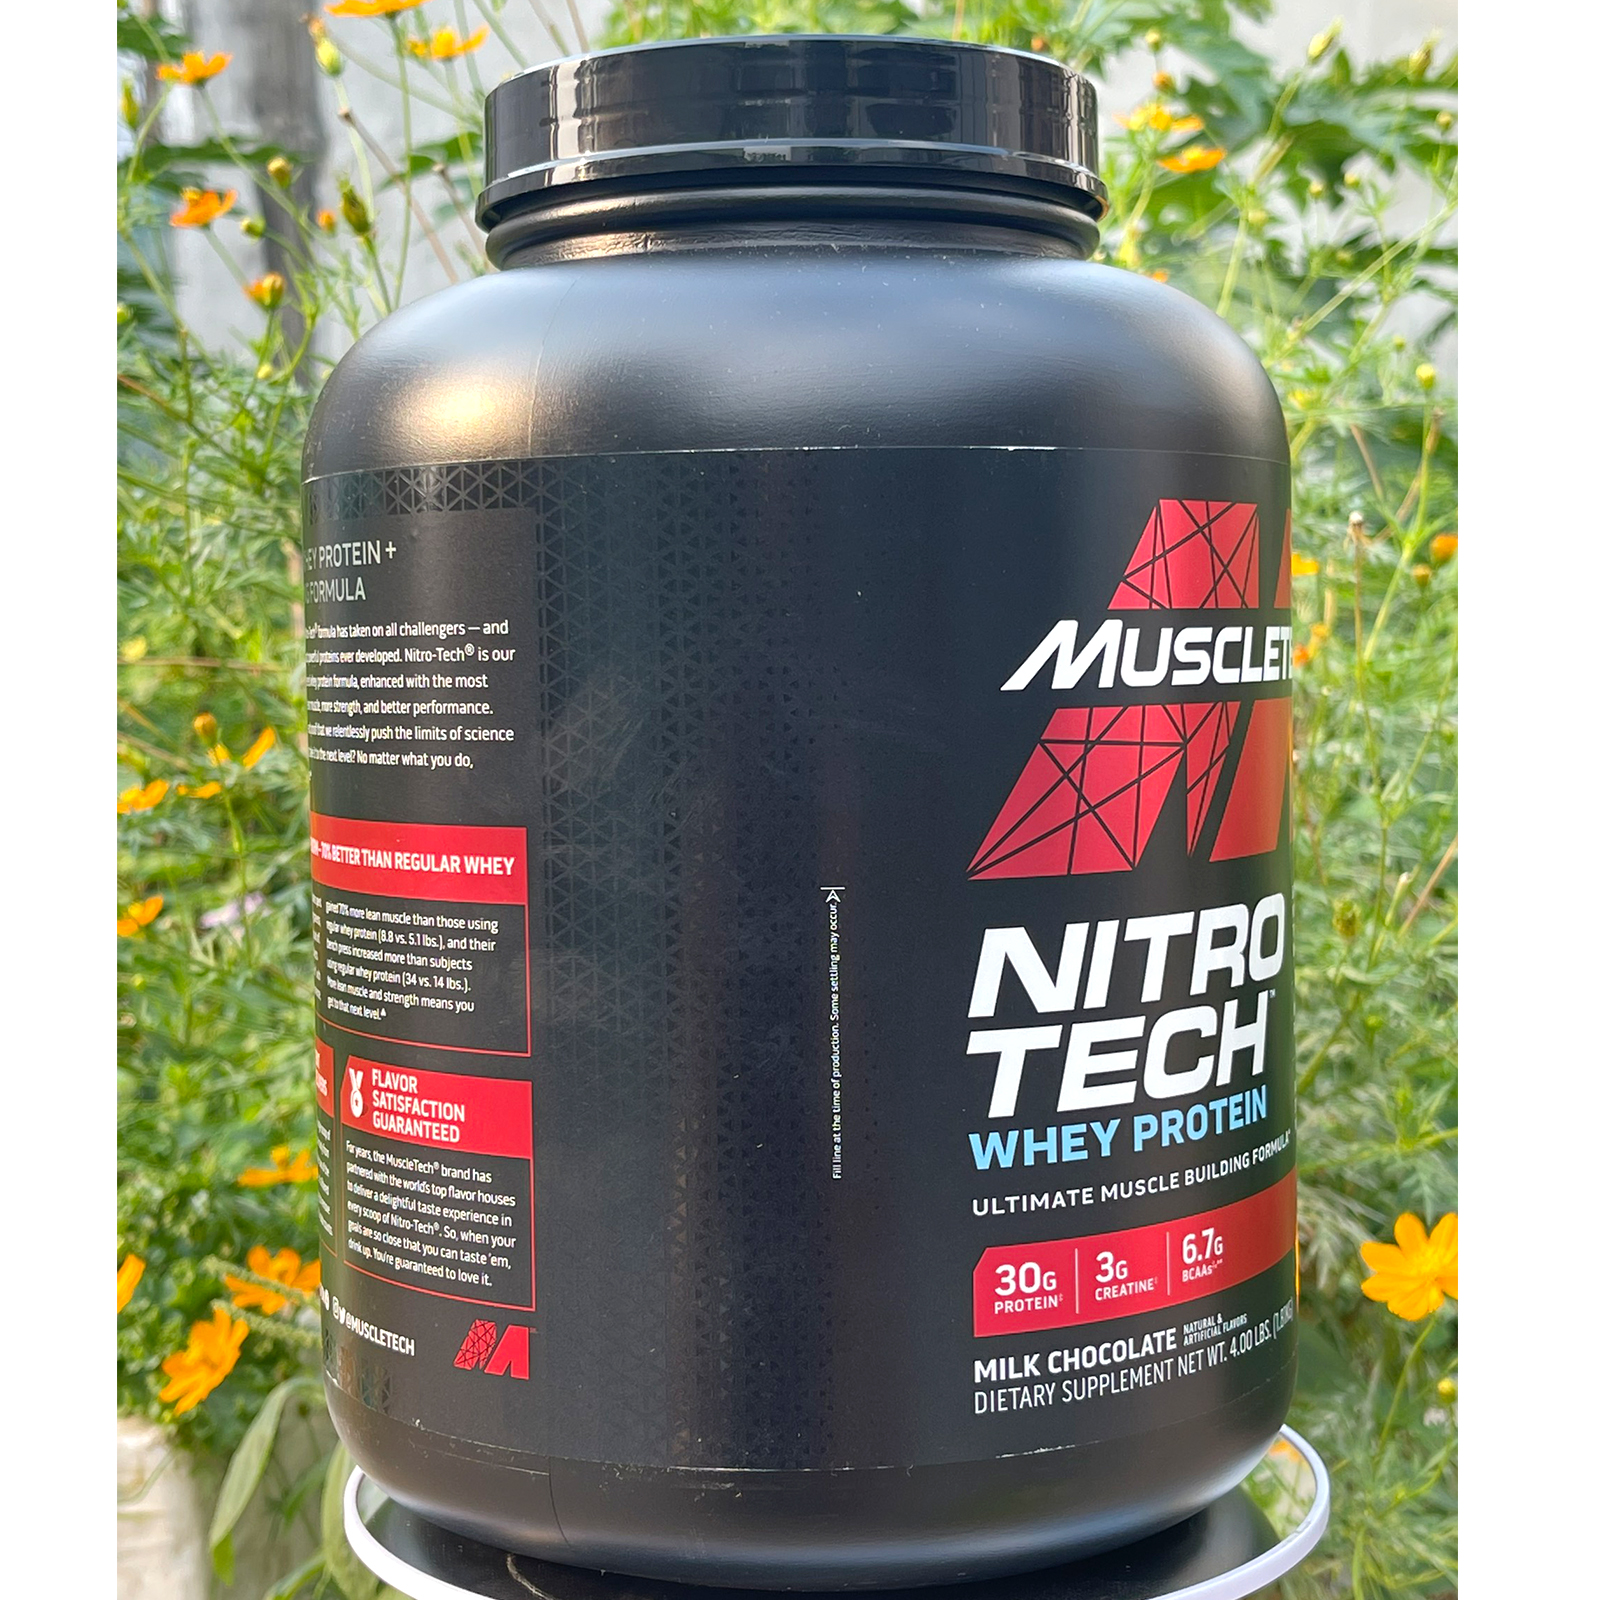 Combo Sữa tăng cơ cao cấp Whey Protein Nitro Tech của MuscleTech hộp 4 LBS hỗ trợ tăng cơ, giảm cân, đốt mỡ cho người tập GYM &amp; Bình lắc 600 ml (Màu Ngẫu Nhiên)